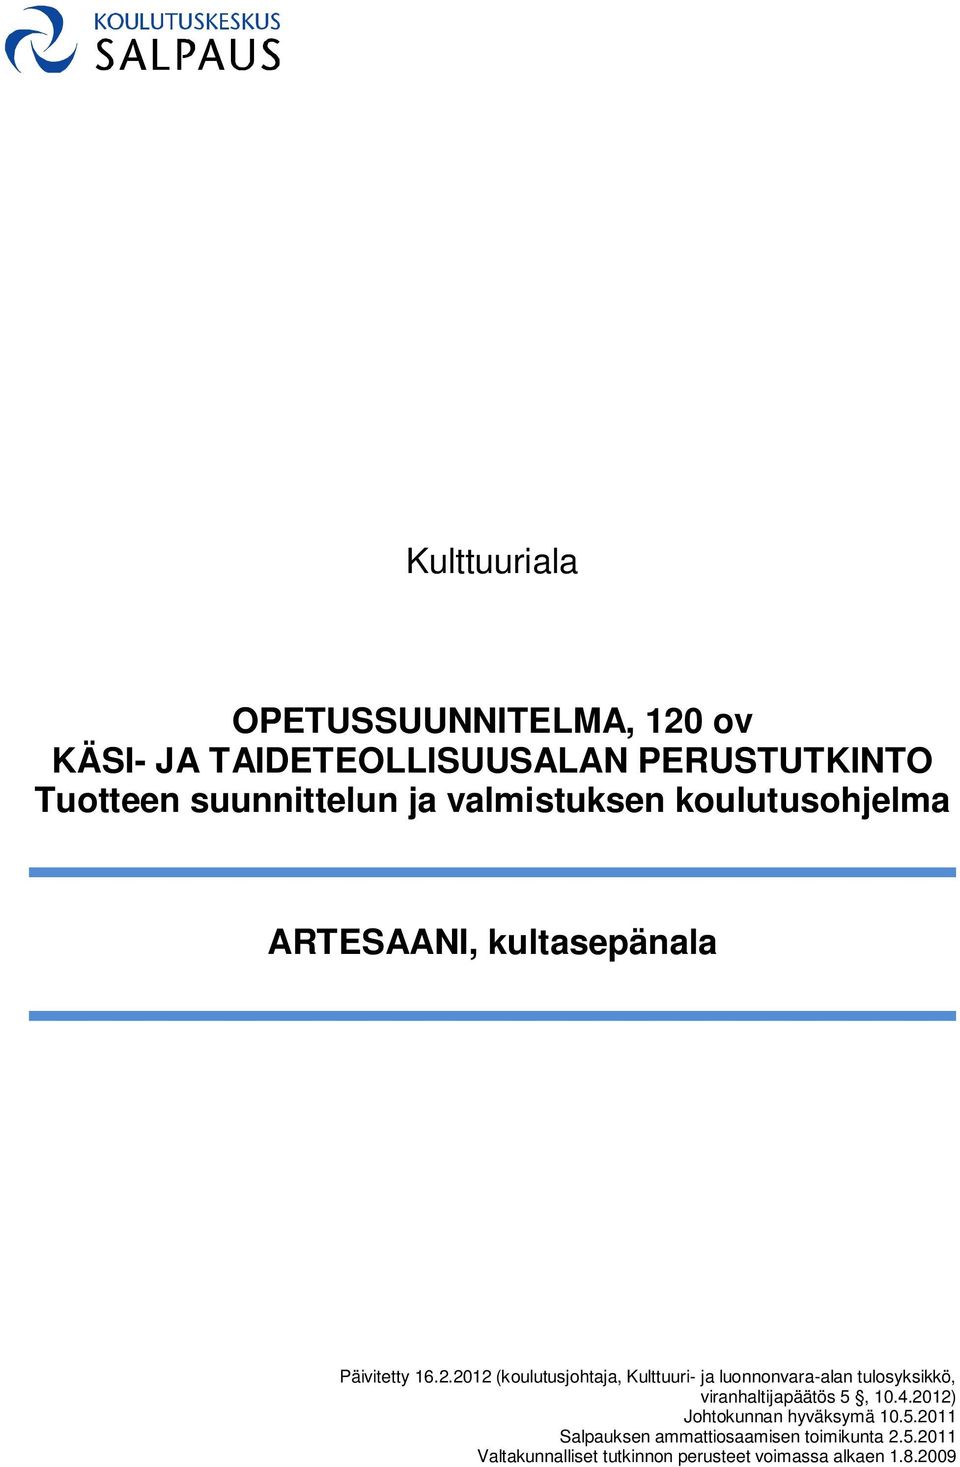 2012 (koulutusjohtaja, Kulttuuri- ja luonnonvara-alan tulosyksikkö, viranhaltijapäätös 5, 10.4.